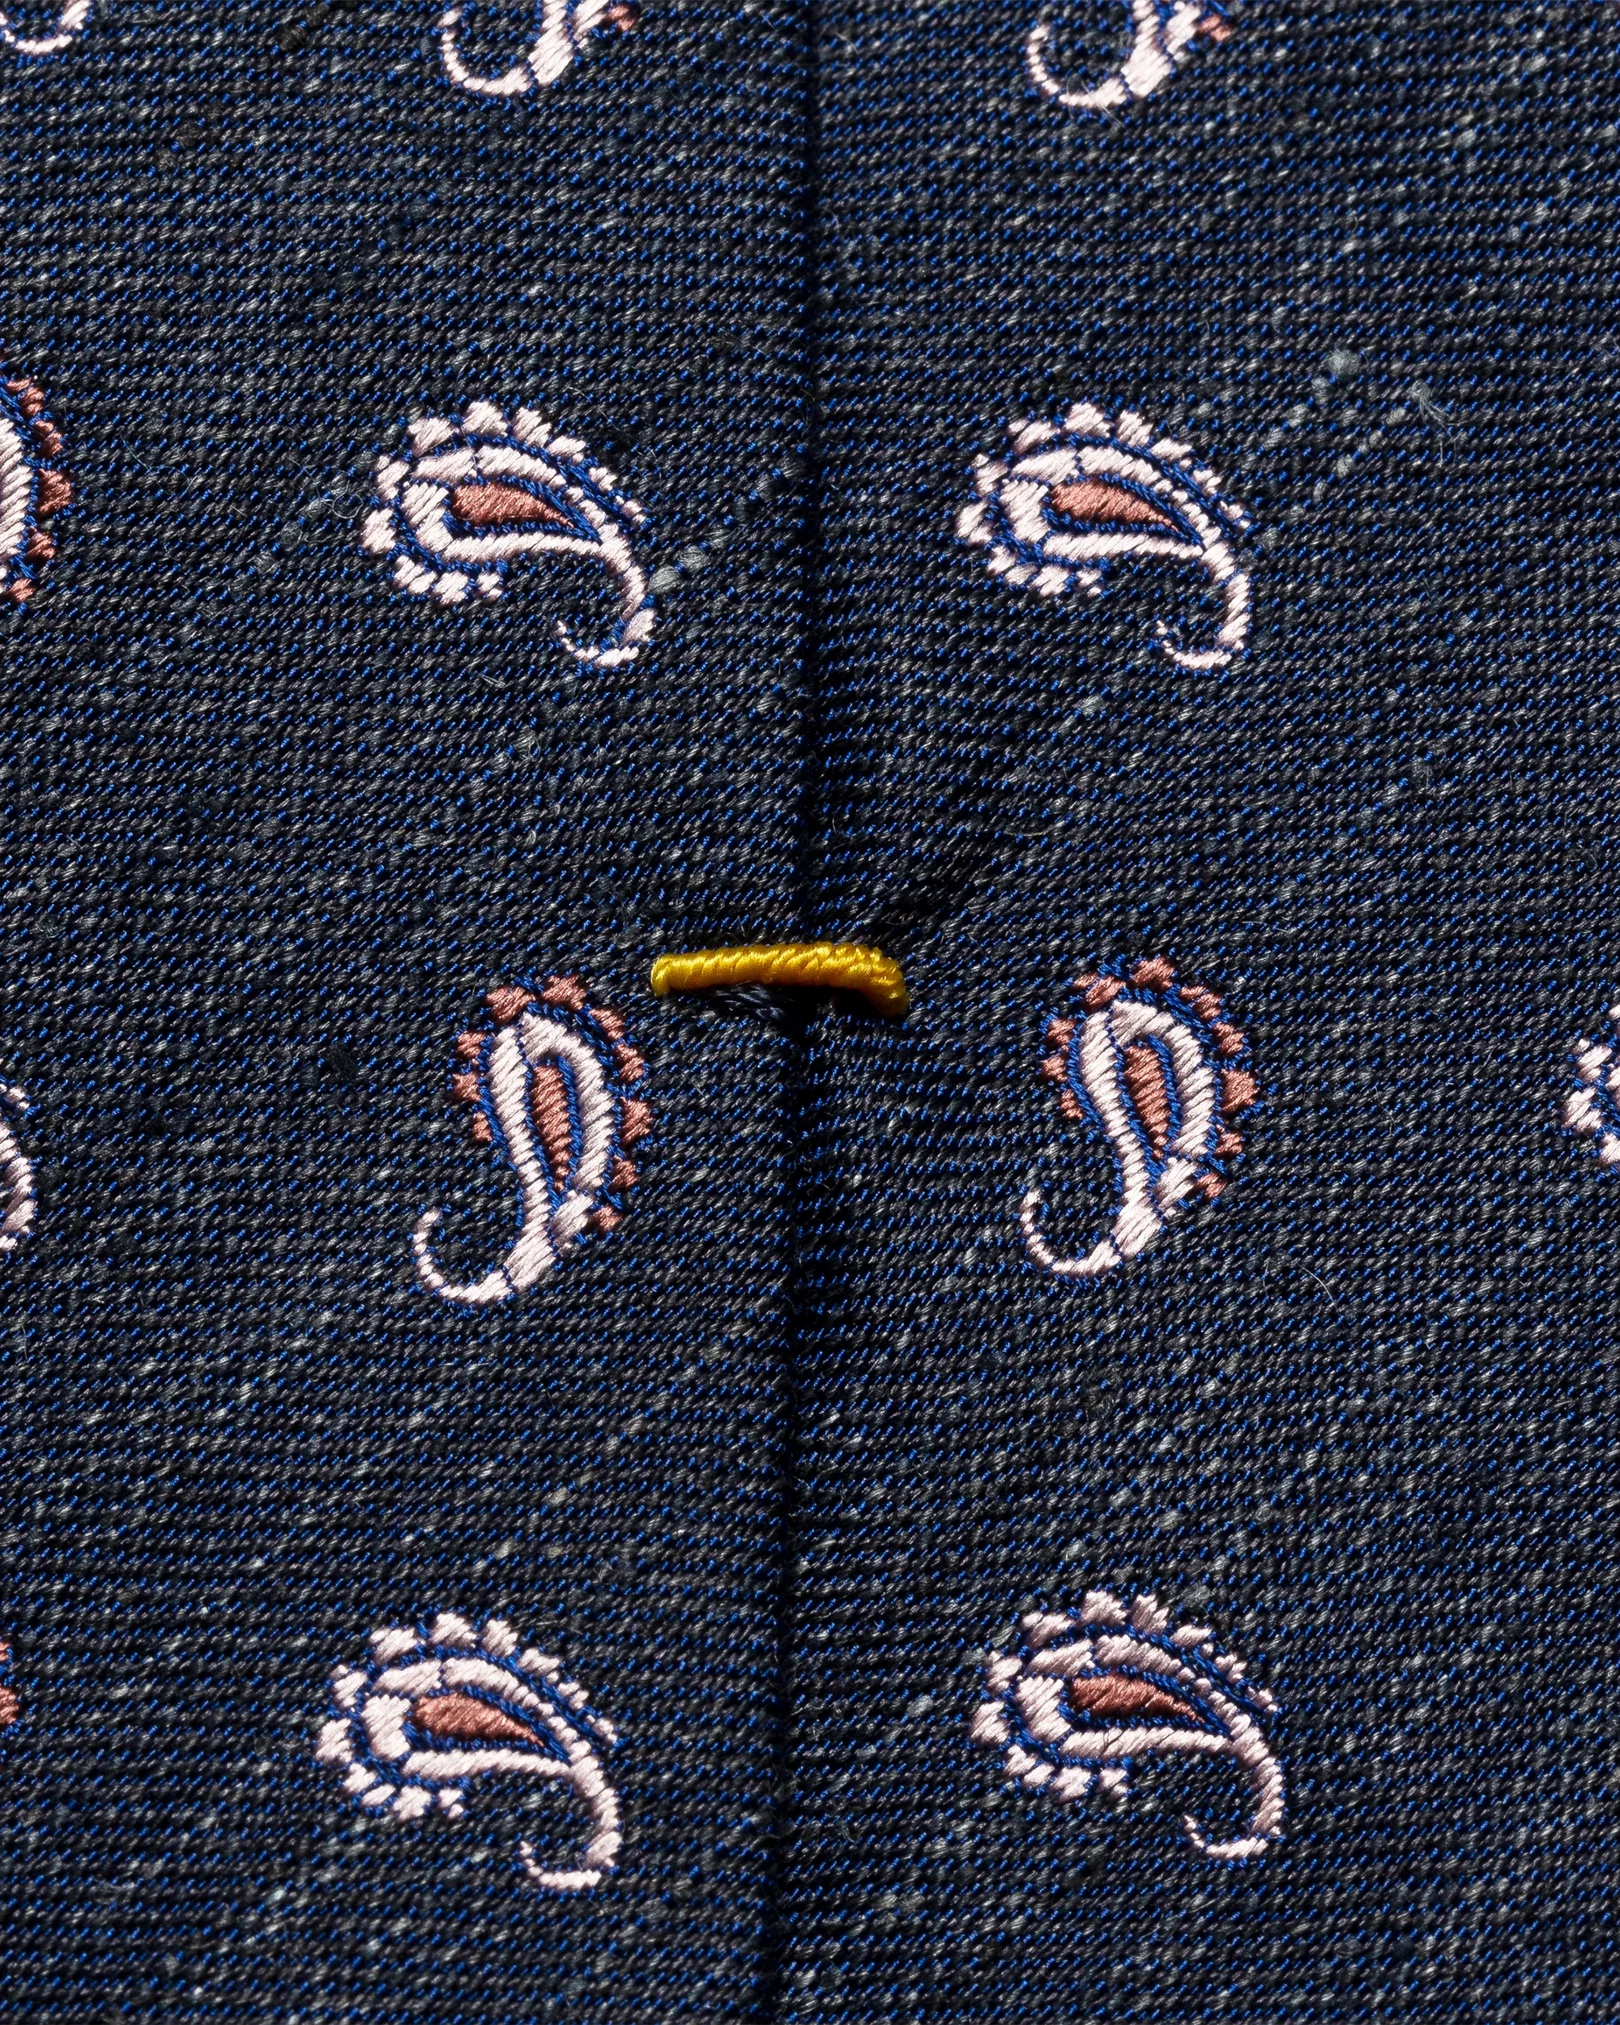 Eton - navy blue silk blend tie